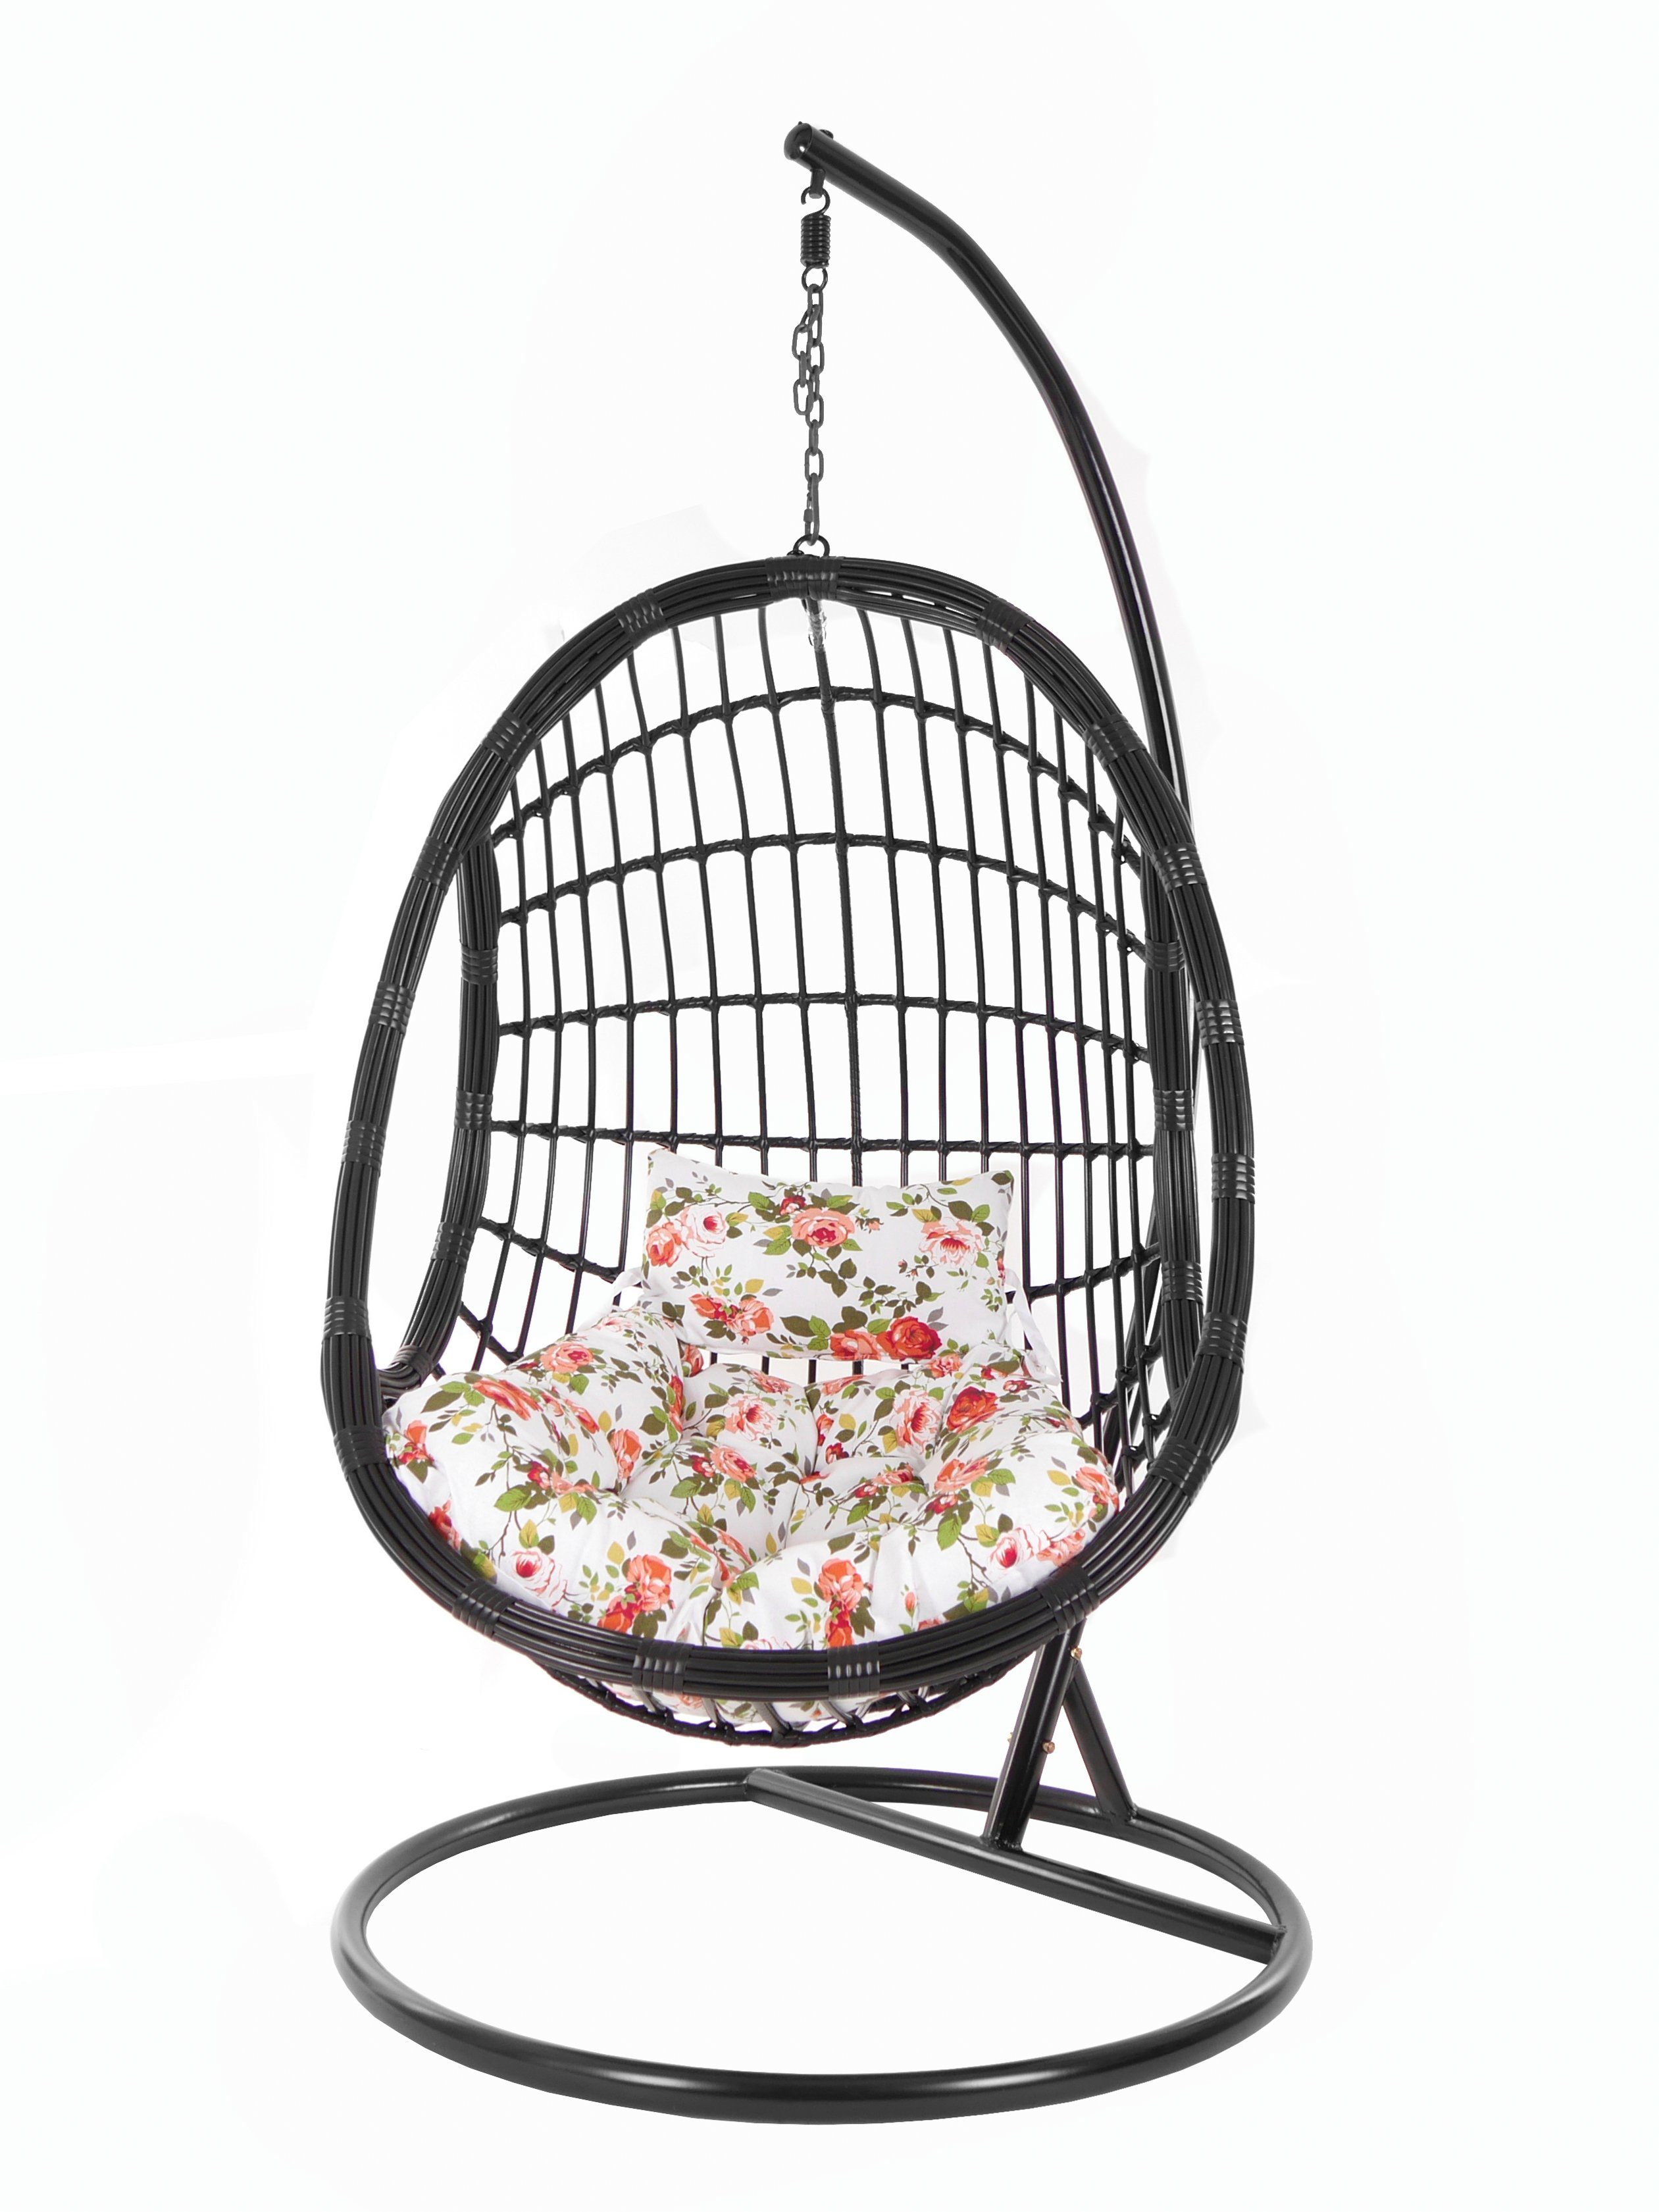 KIDEO Hängesessel PALMANOVA black, Swing rosen Gestell Loungemöbel, Kissen, schwarz, roses) und Design Chair, Schwebesessel, edles (3761 mit Hängesessel